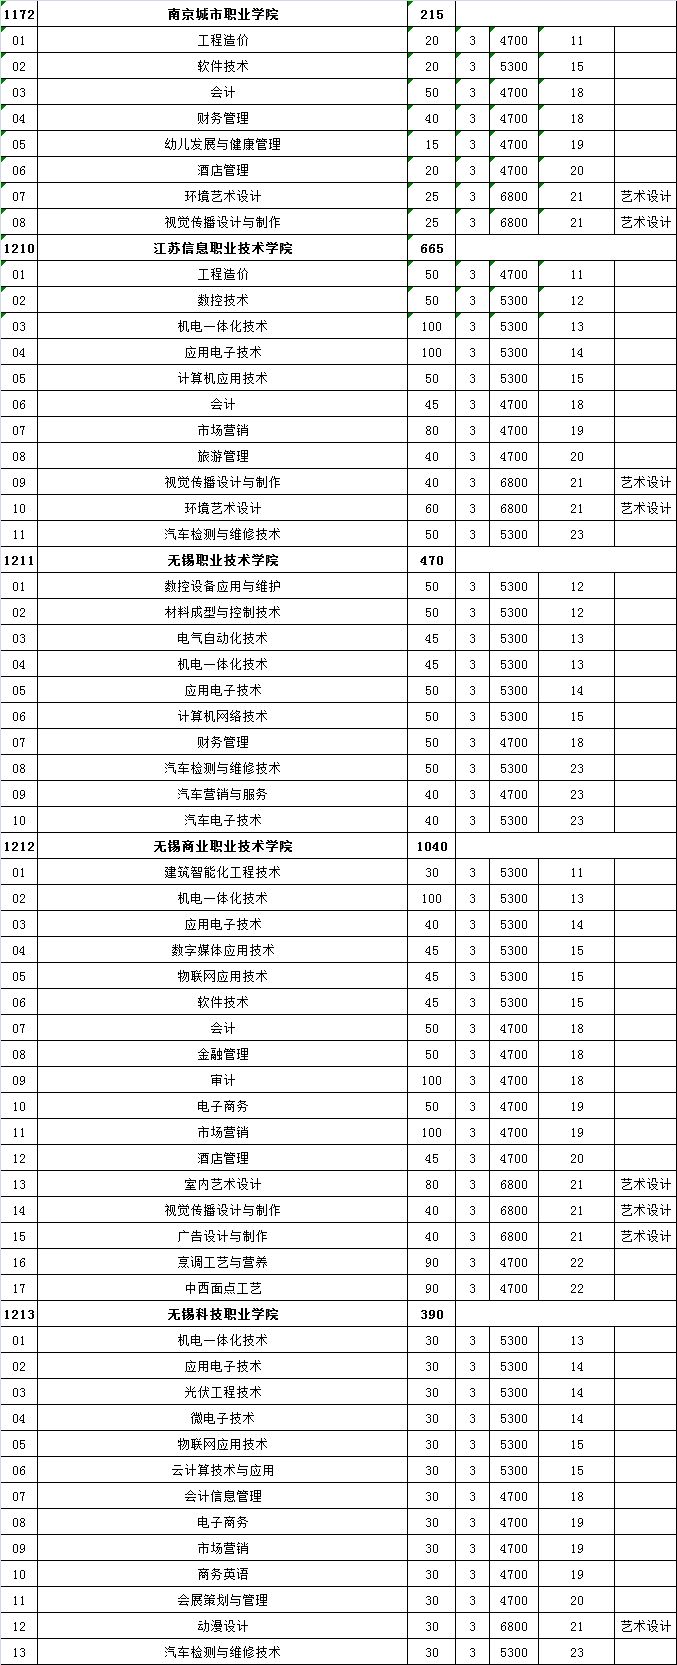 江苏高校对口单招计划公布 18所本科院校参加